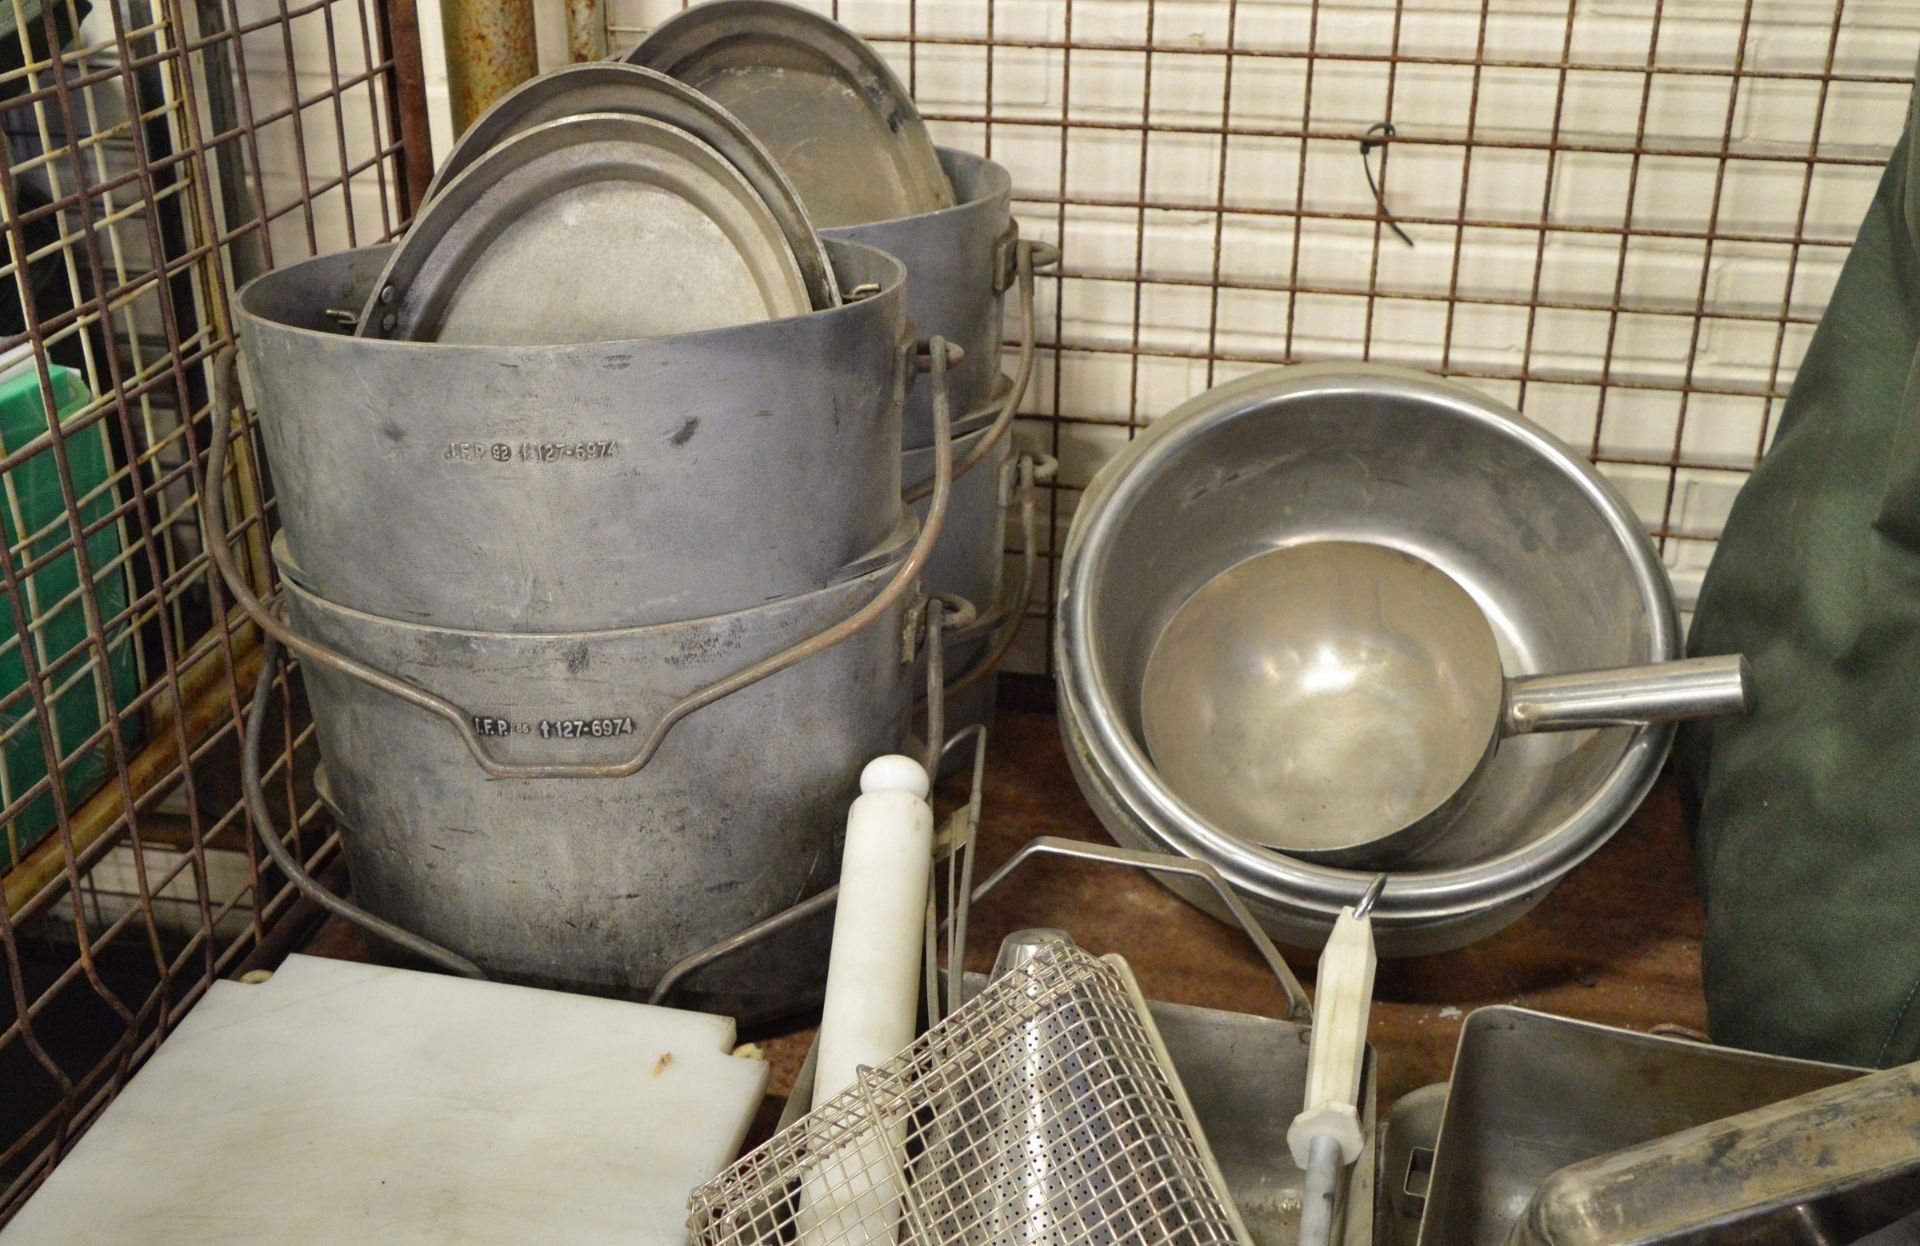 Field catering kit - Cooker, Oven, Utensil kit, pots, pans - Image 2 of 8